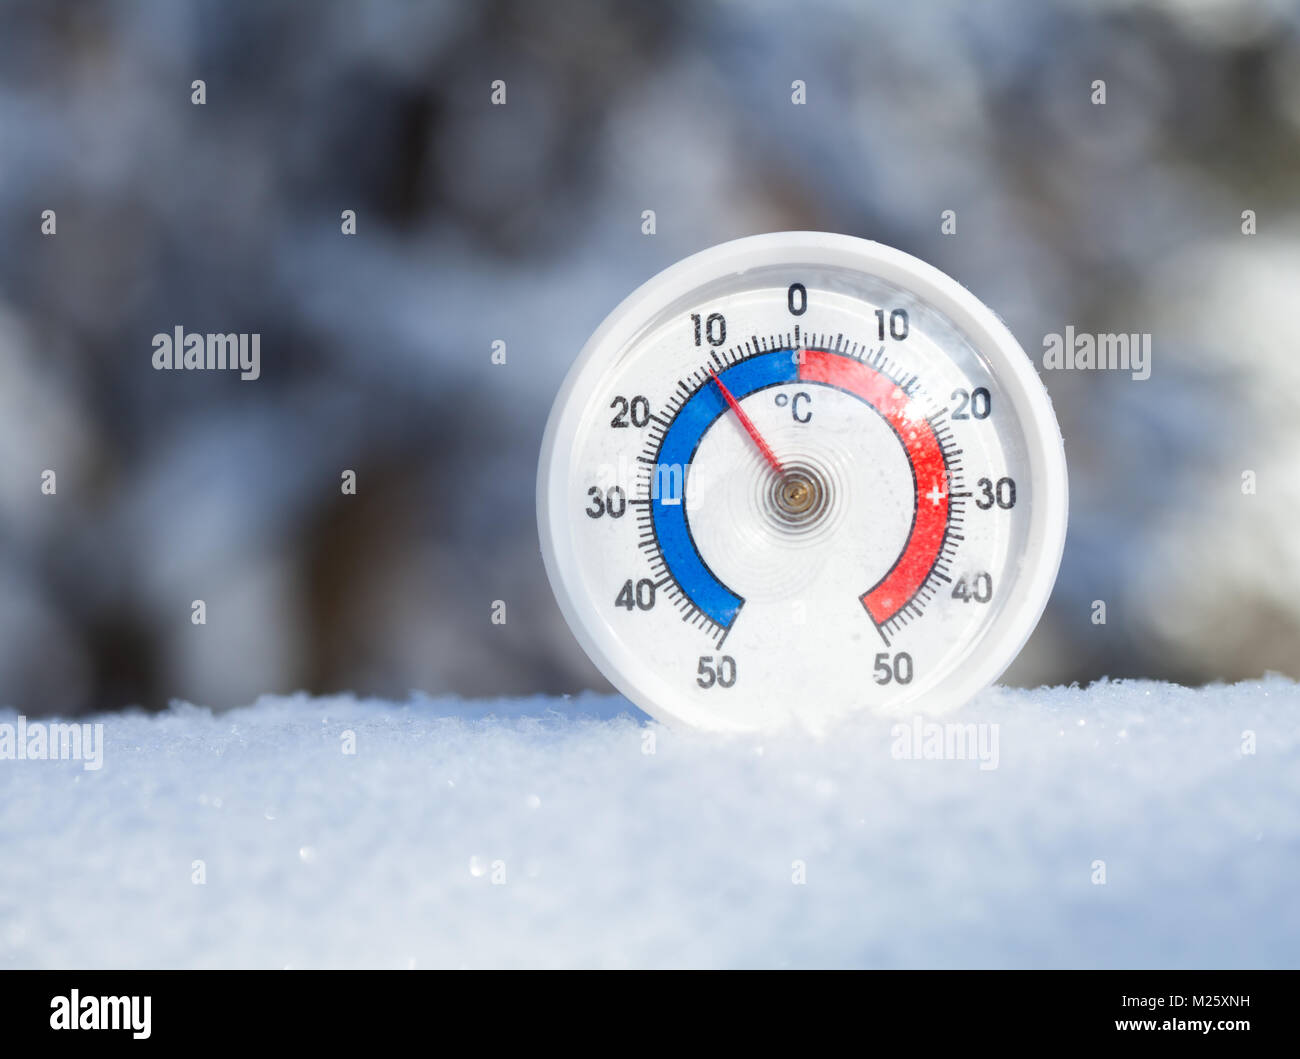 Termometro con scala Celsius collocato in una neve fresca che mostra  temperatura sotto zero meno 11 gradi - freddo inverno concept Foto stock -  Alamy